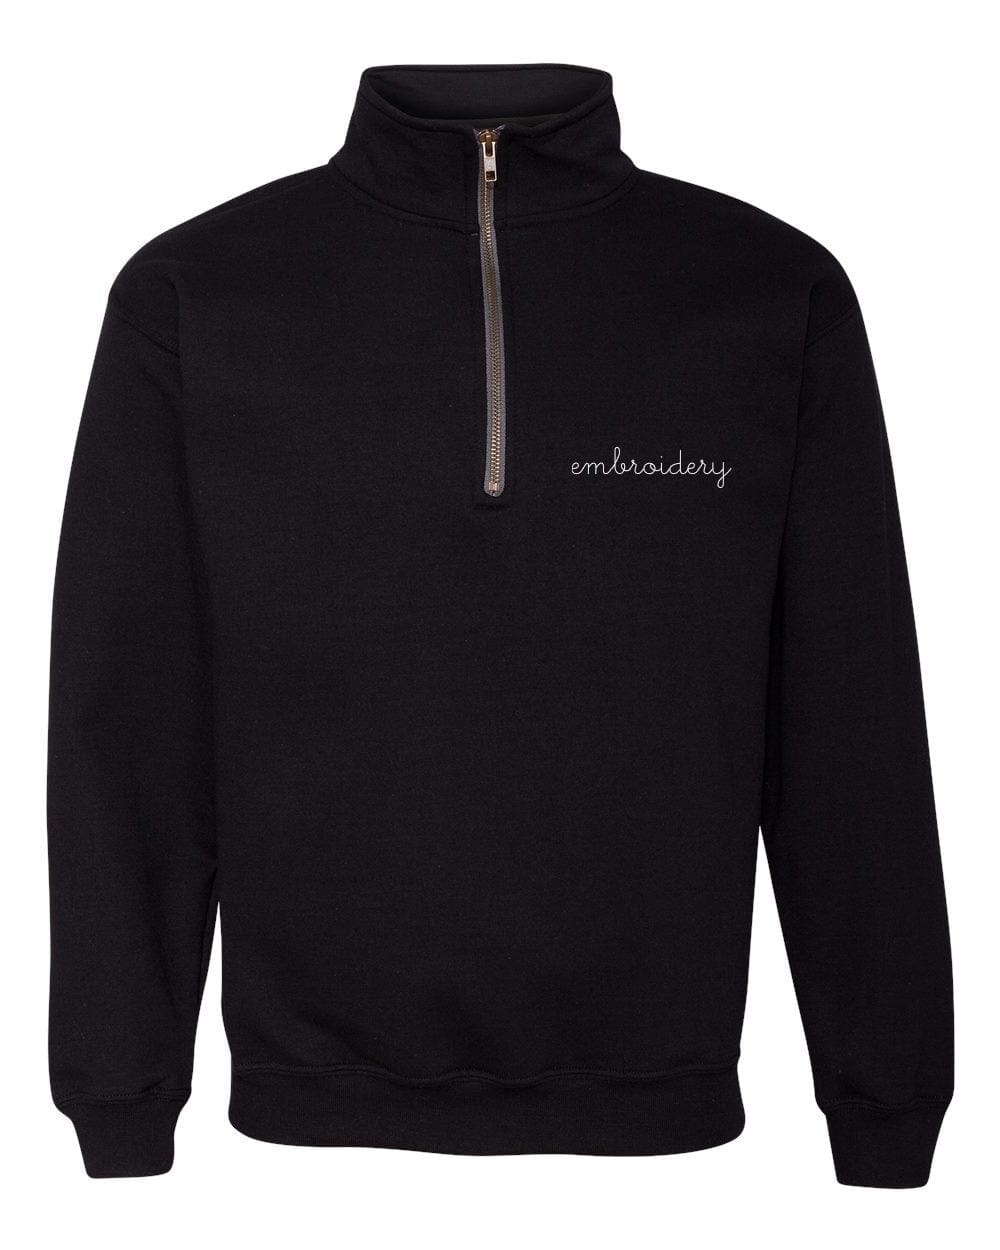 Adult Half Zip Fleece (Unisex) juju + stitch Adult S / Black custom personalized script embroidered half-zip fleece sweatshirt